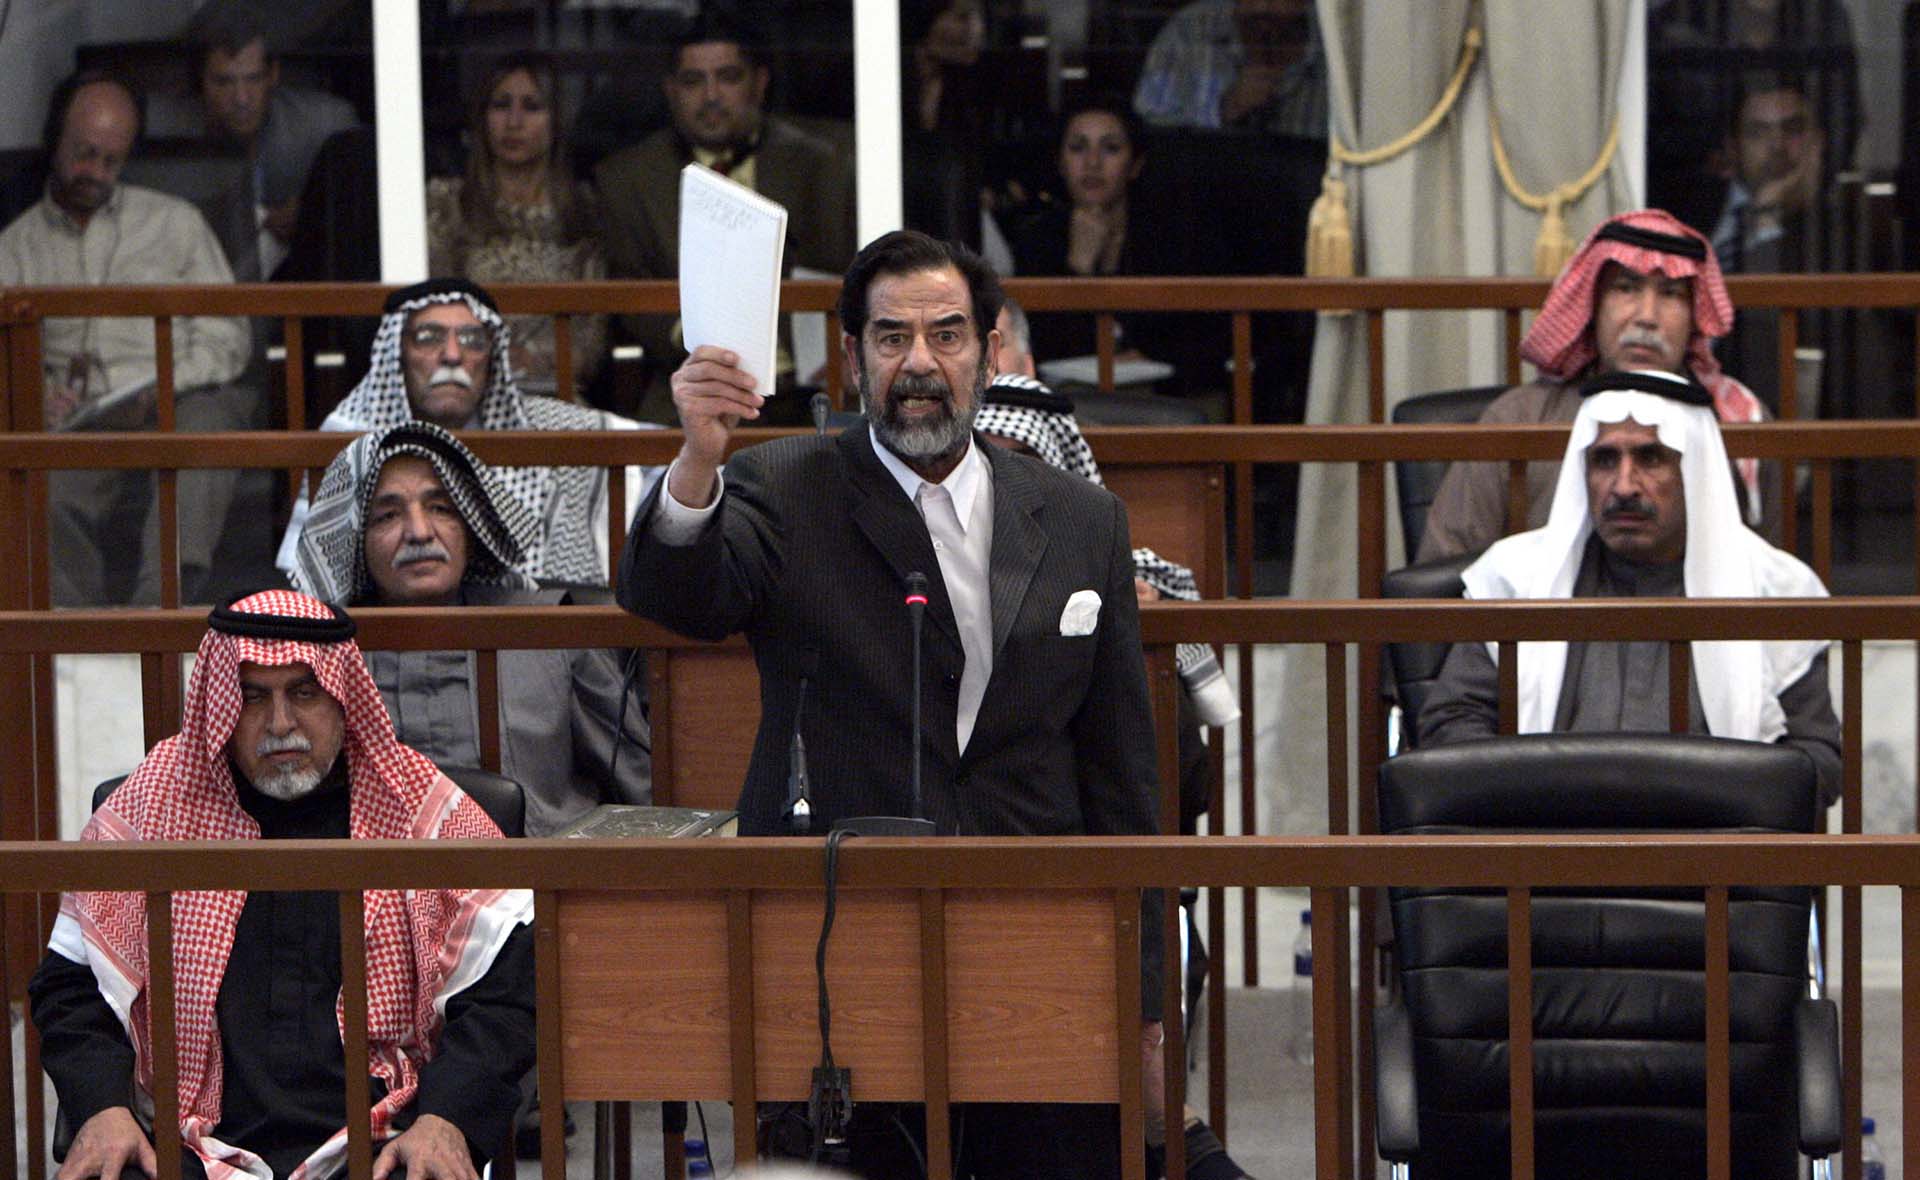 Saddam y otras siete personas enfrentaron cargos en 2005 de ordenar el asesinato de casi 150 personas en la aldea mayoritariamente chiita de Dujail, al norte de Bagdad, luego de un atentado fallido contra el ex dictador en 1982 (David Furst-pool/Getty Images)
